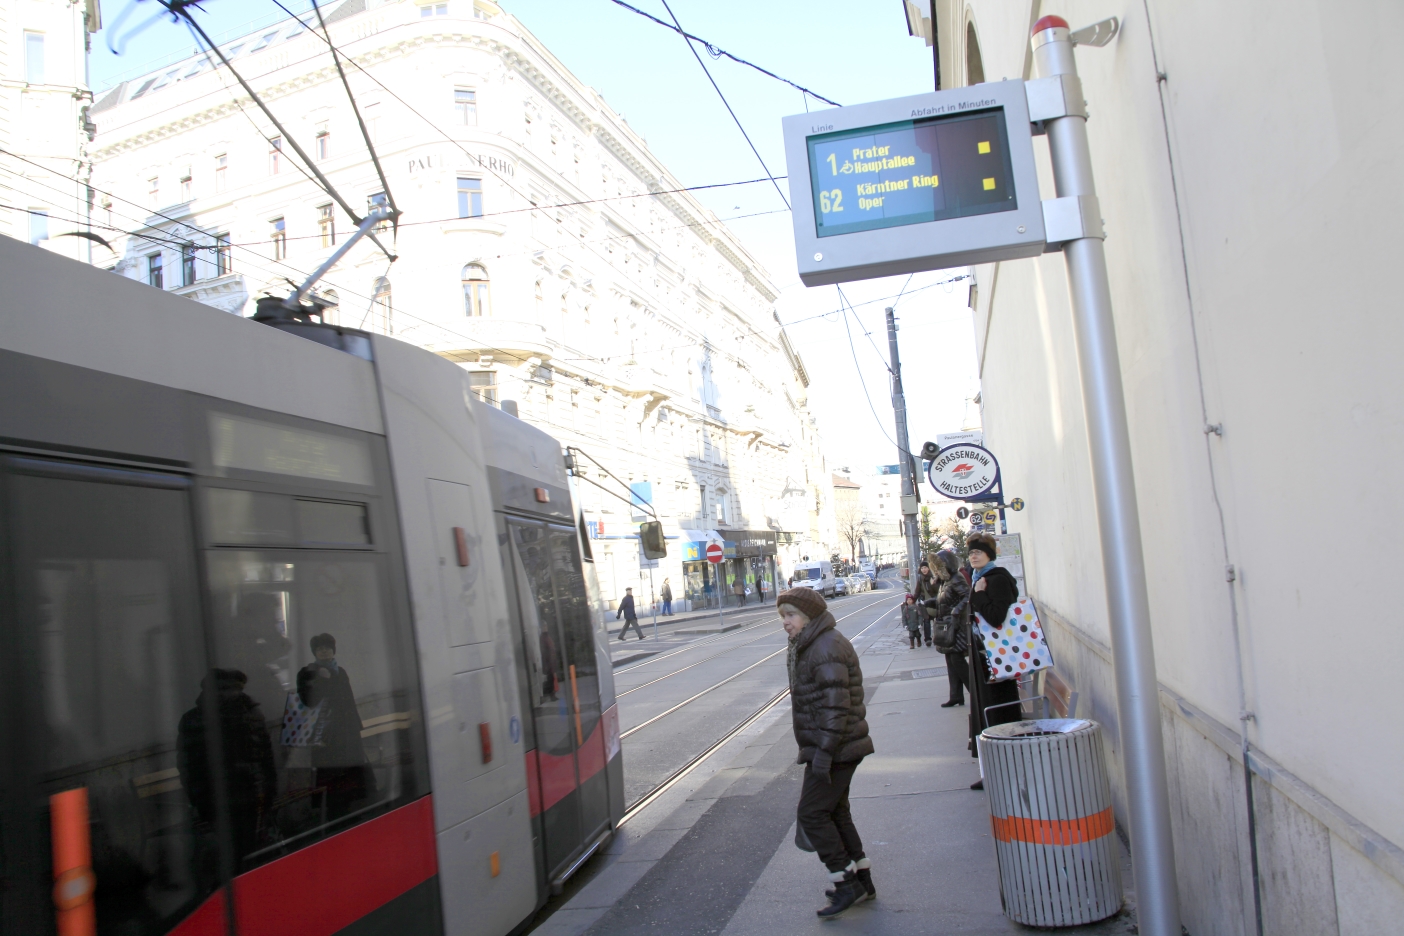 Station Paulanergasse Neue Haltestellenanzeige für die Linien1 und 62 im Hintergrund ein Ulf der Linie 1